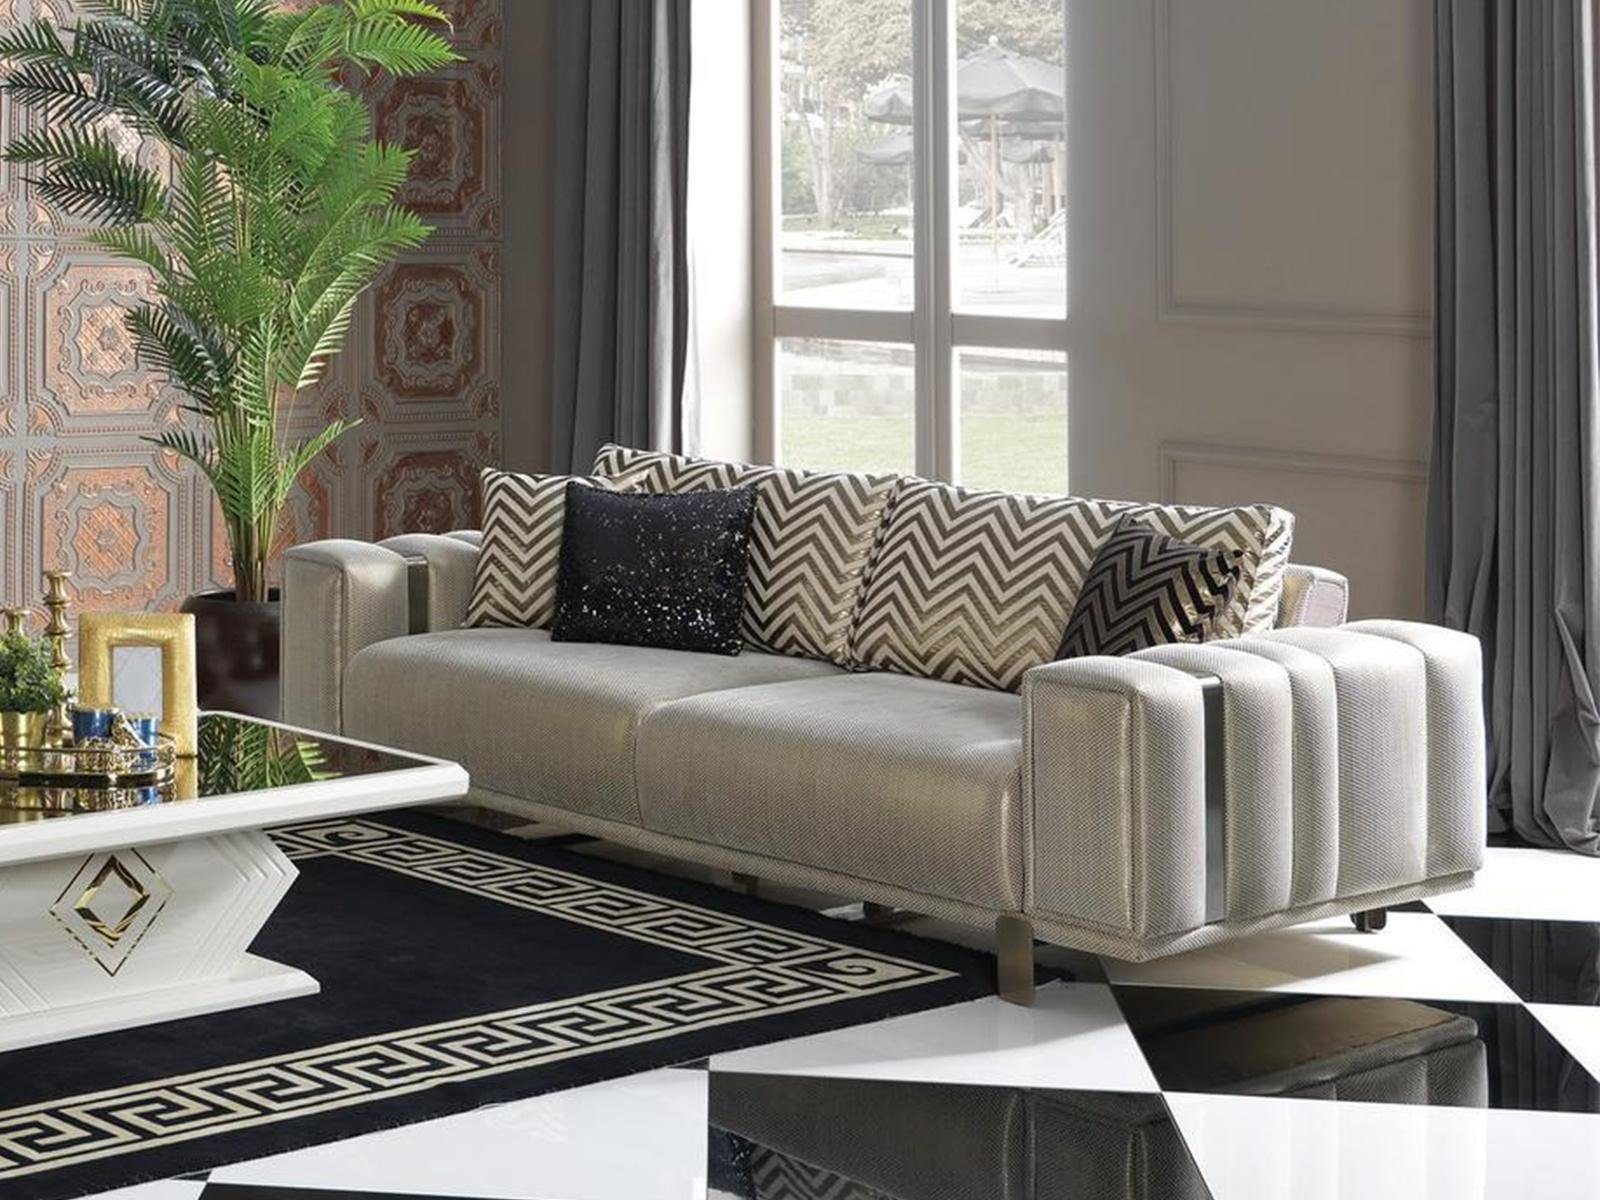 JVmoebel 2-Sitzer Möbel Sofa 2 Sitzer Wonzimmer Couch Design Zweisitzer Couchen, 1 Teile, Made in Europa